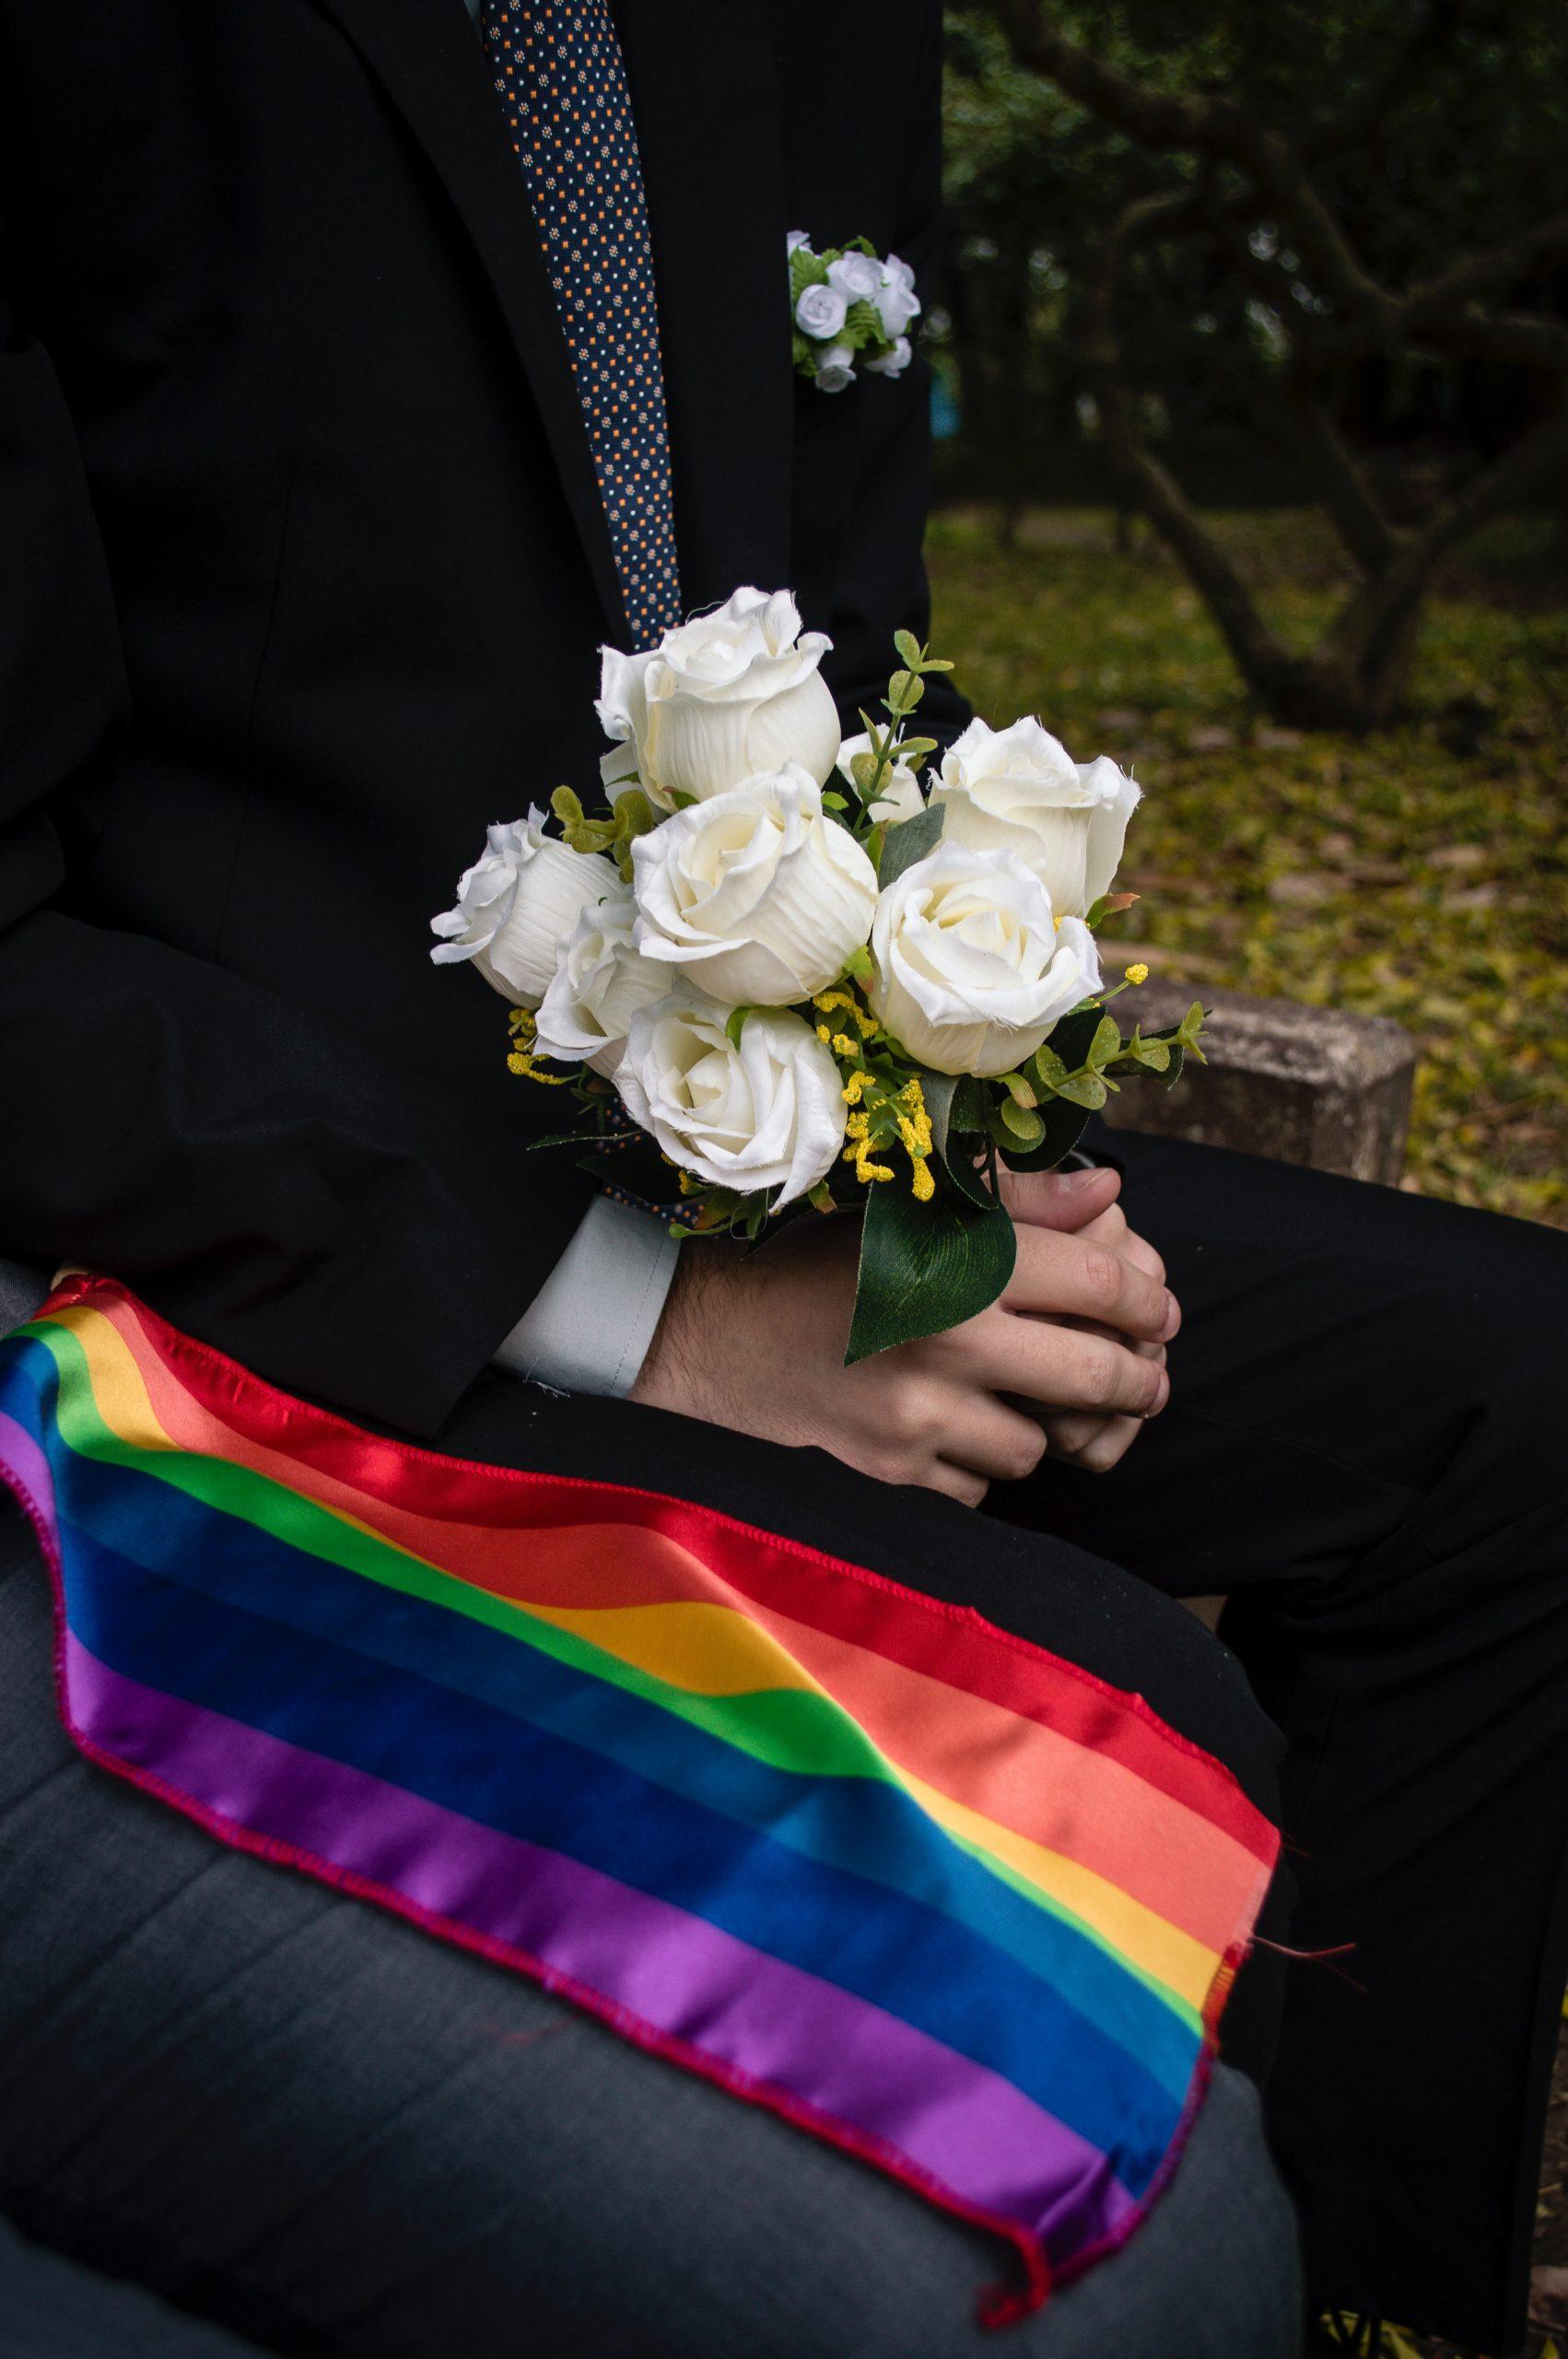 Designer who won’t make same-sex wedding websites loses case